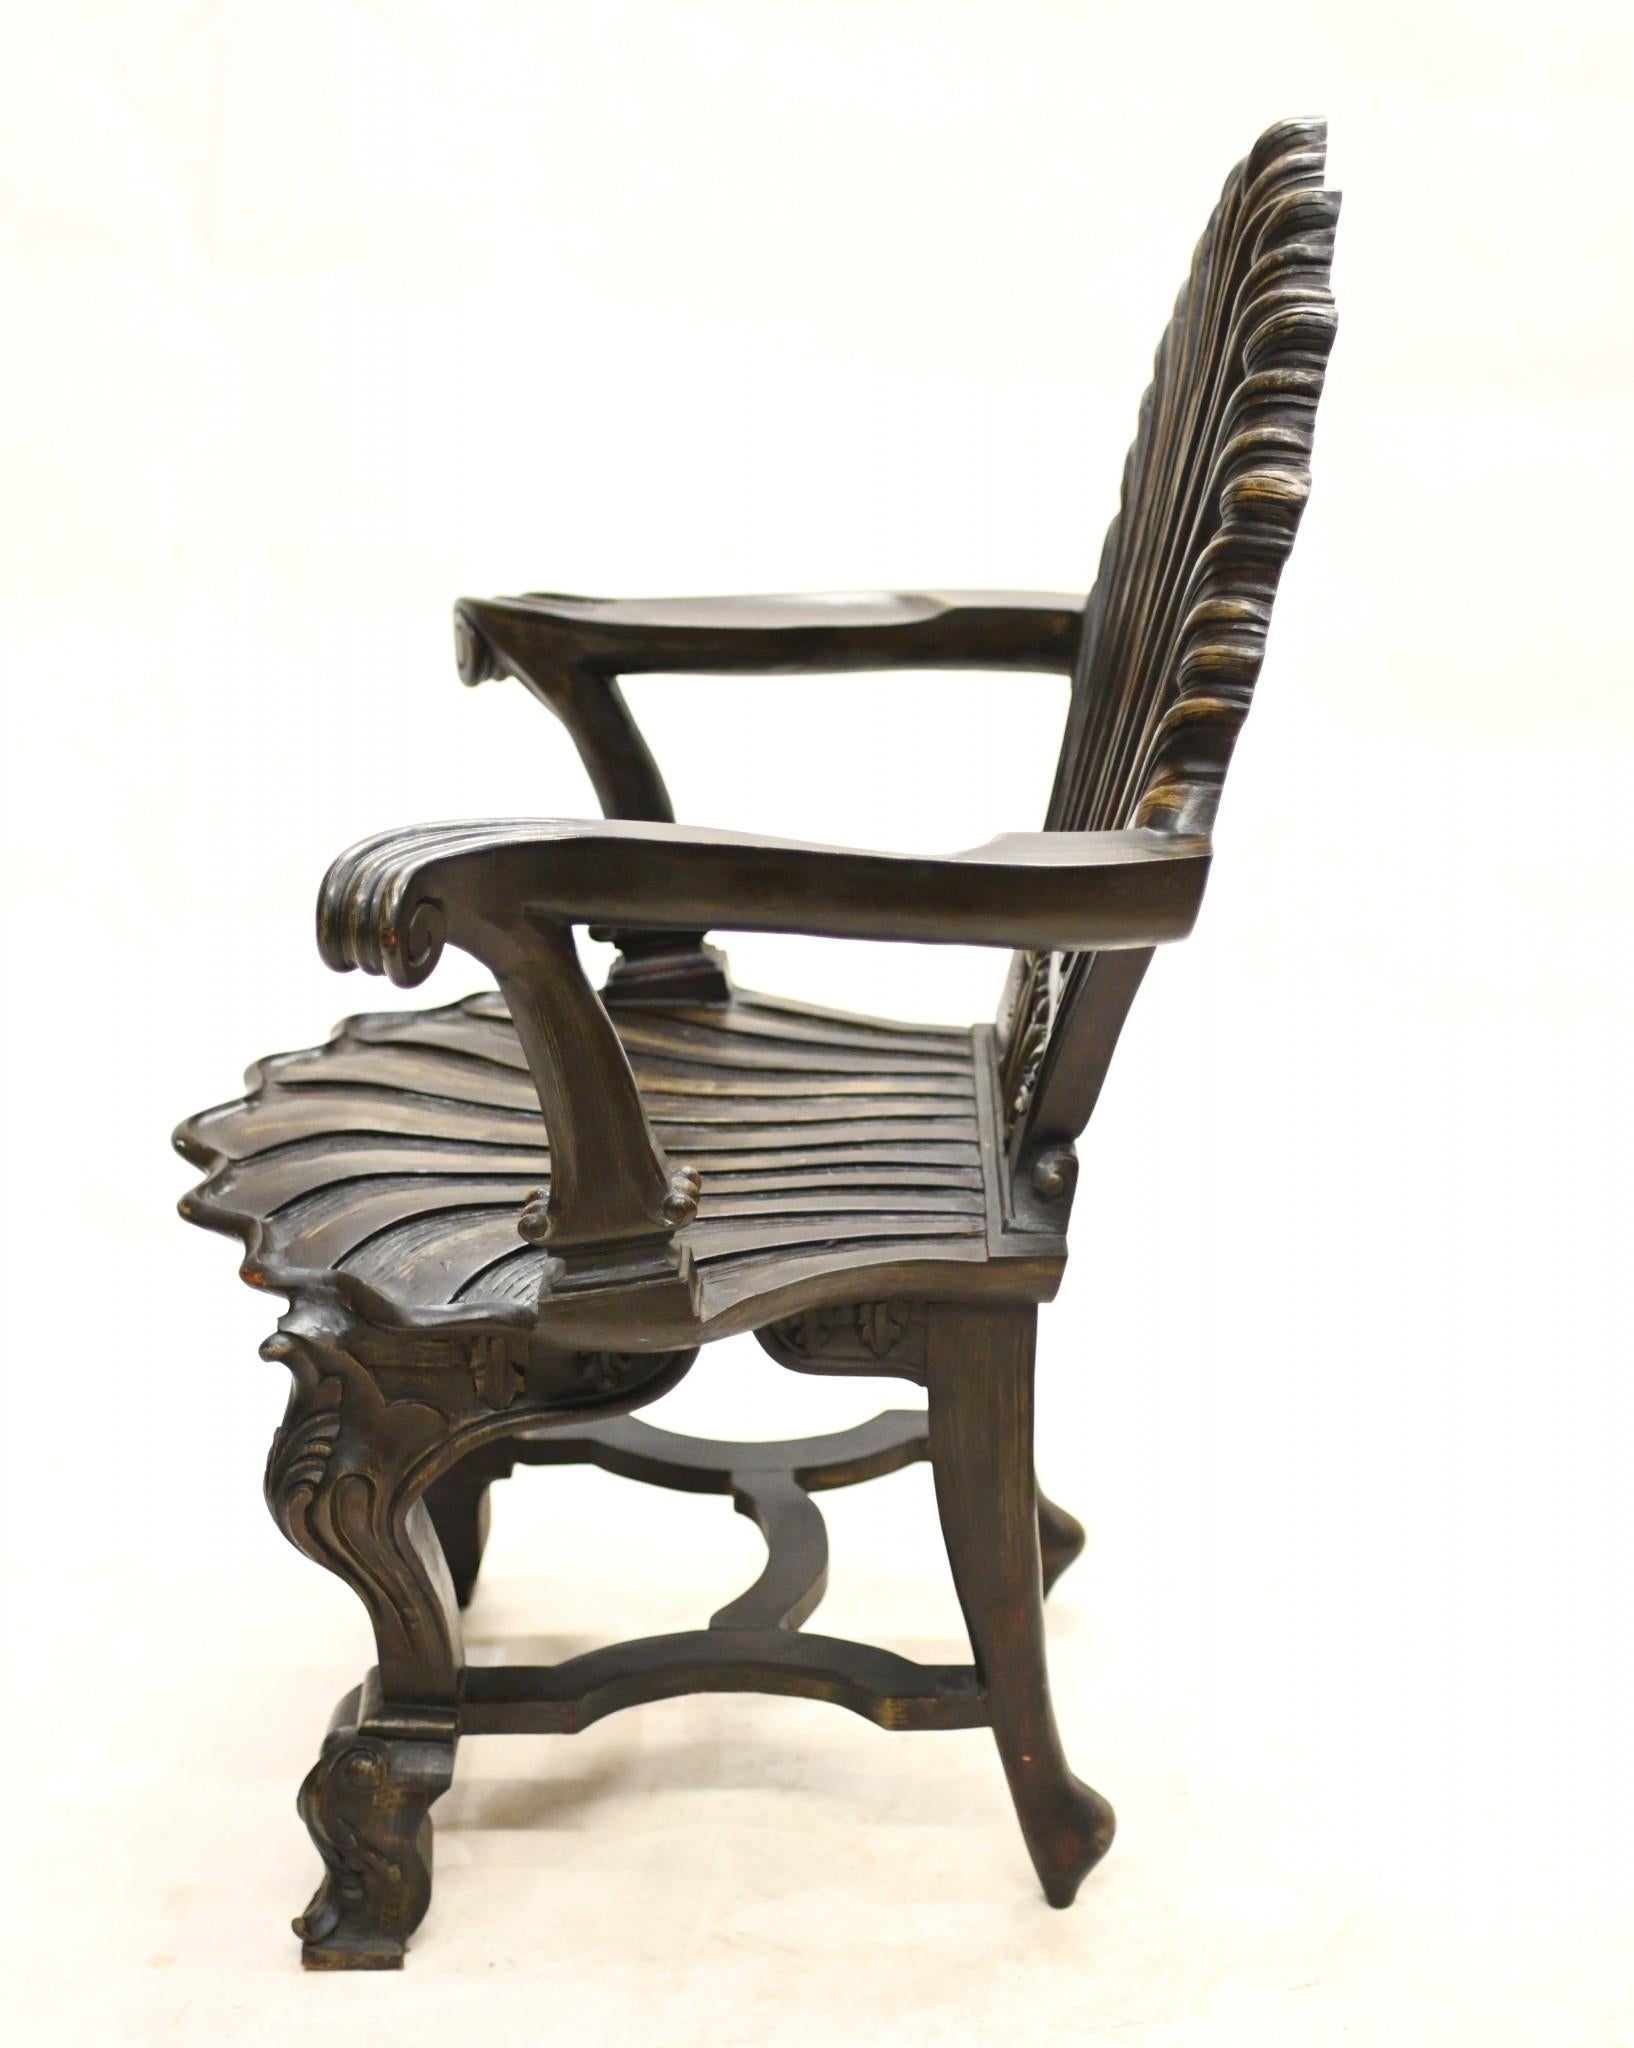 Superbe paire de chaises grotto anglaises très tendance
Elegant sculpté avec des motifs rococo, y compris des dossiers à coquilles.
Une paire pleine de caractère, idéale comme chaise d'appoint.
Nous datons cette paire d'environ 1930.
Offert en très